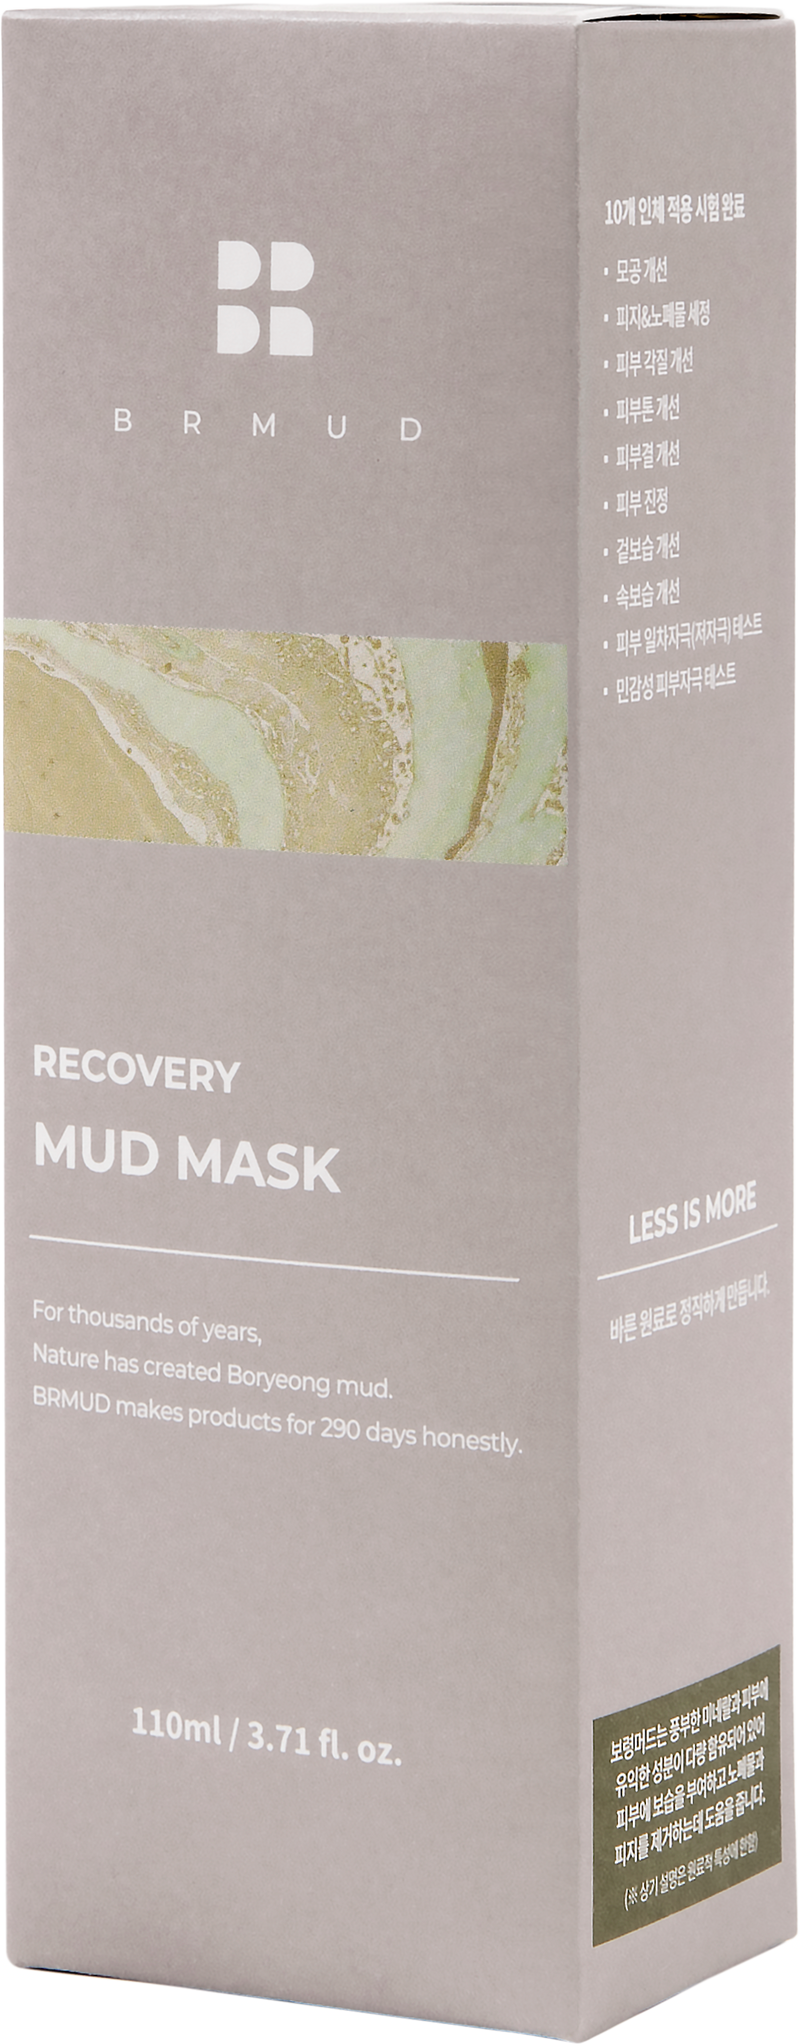 Recovery Mud Mask | Máscarilla de barro de recuperación 110ml BRMUD